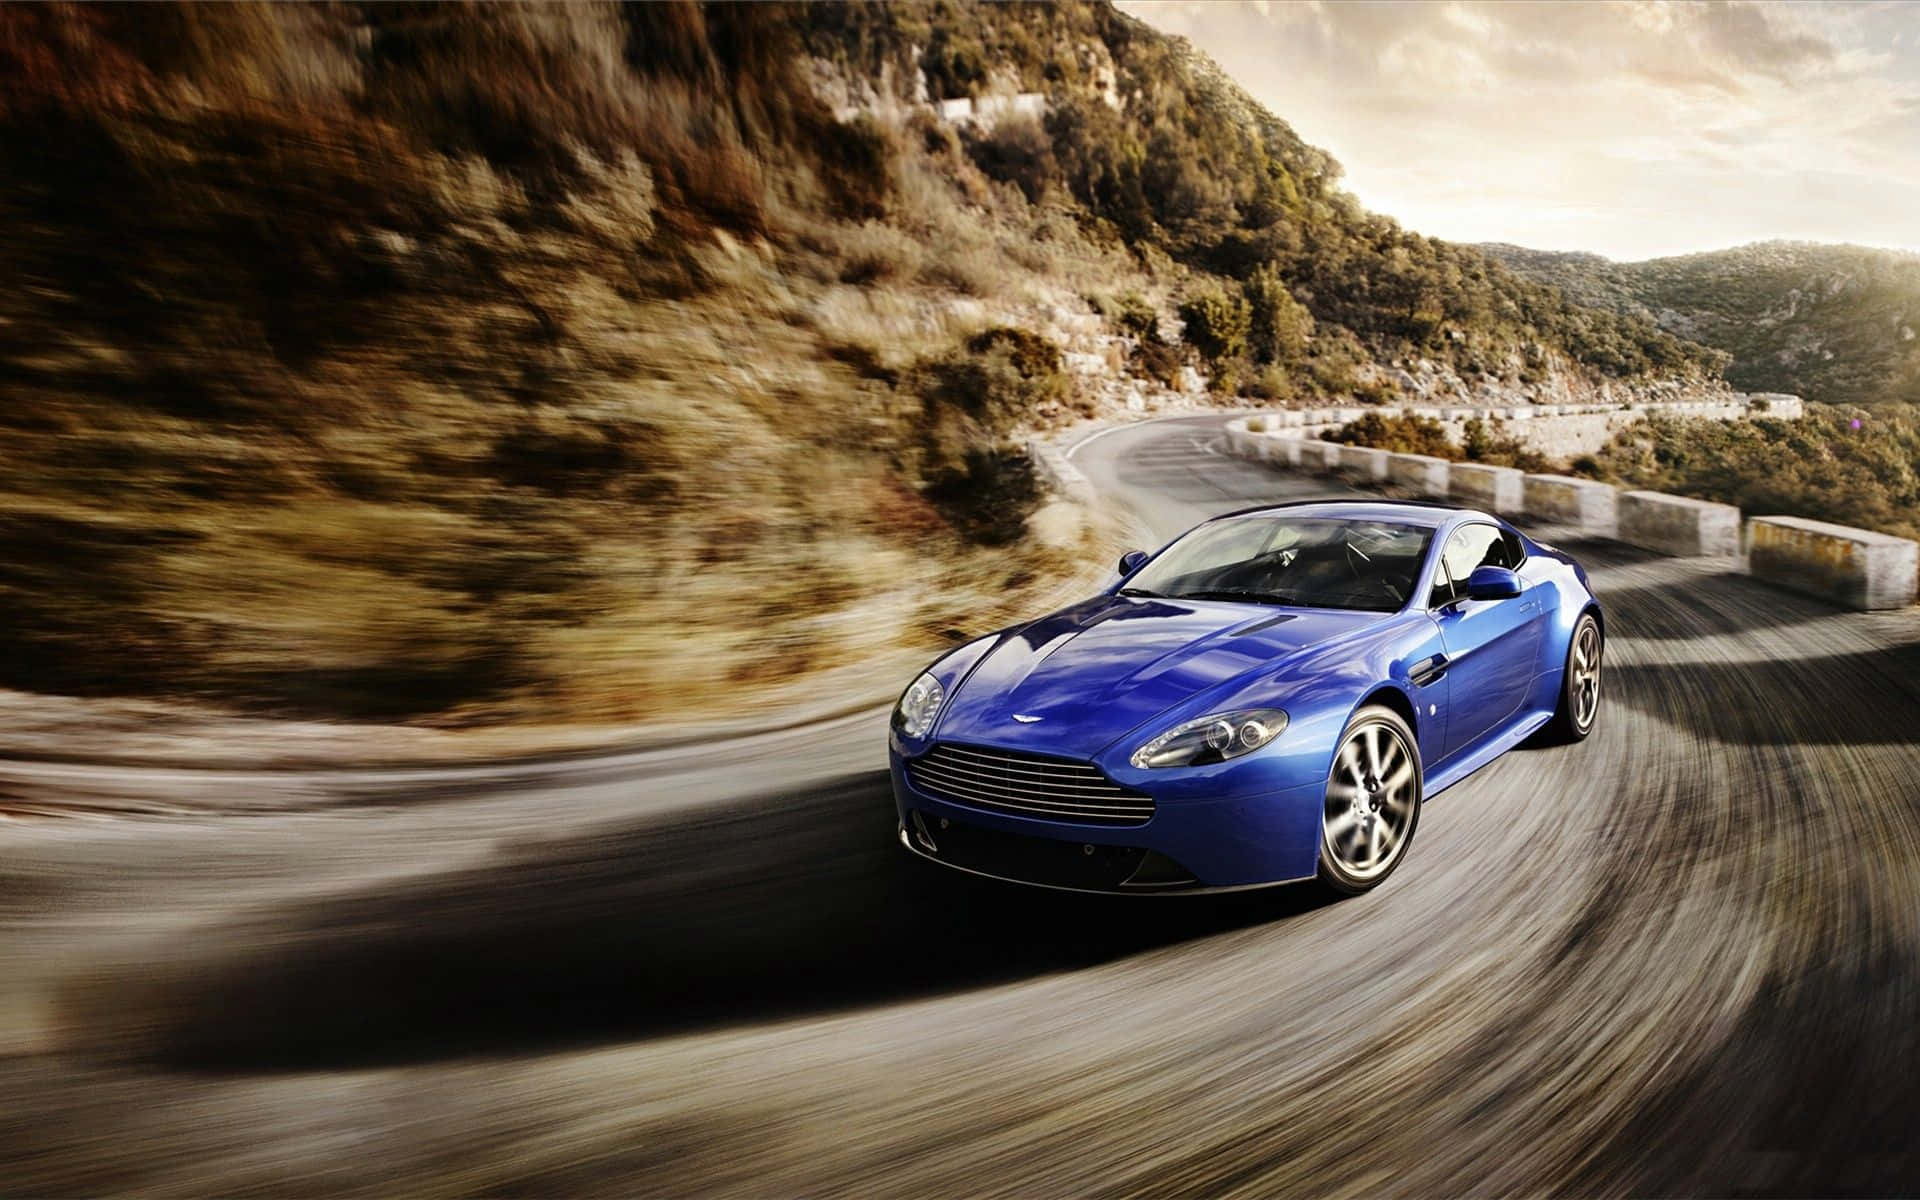 Stunning Aston Martin V12 Vantage in Motion Wallpaper